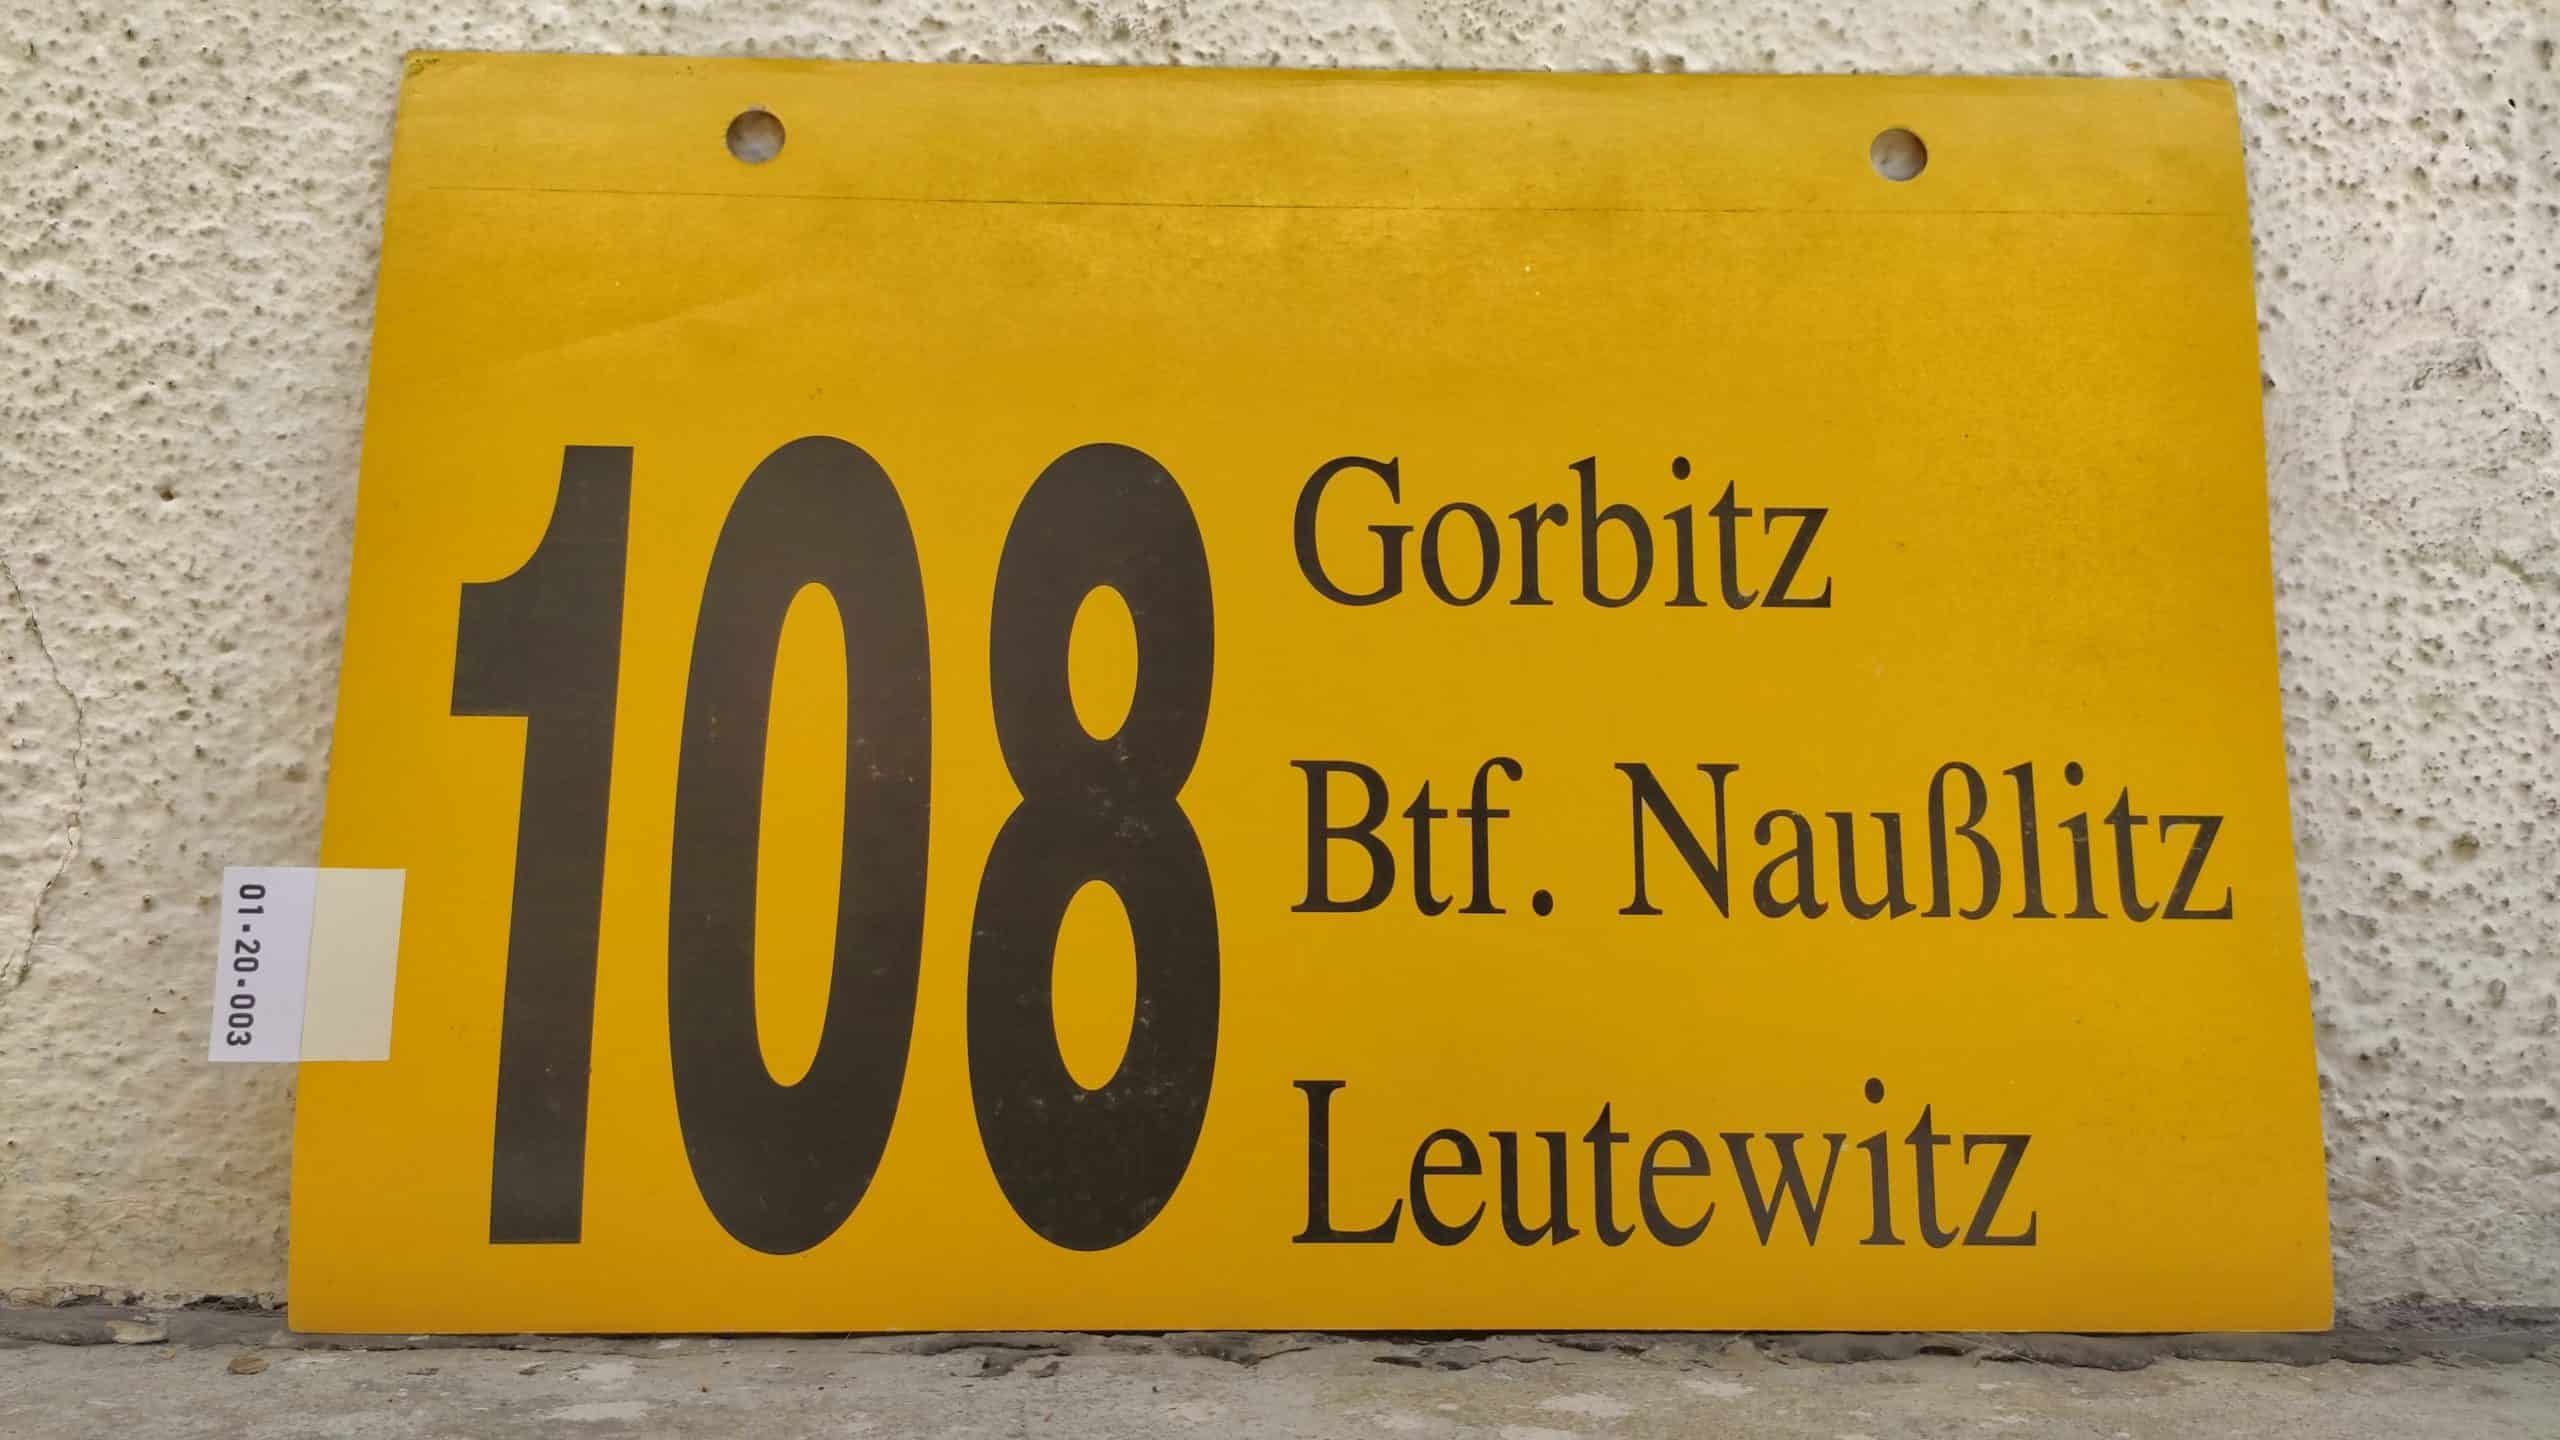 108 Gorbitz – Leutewitz